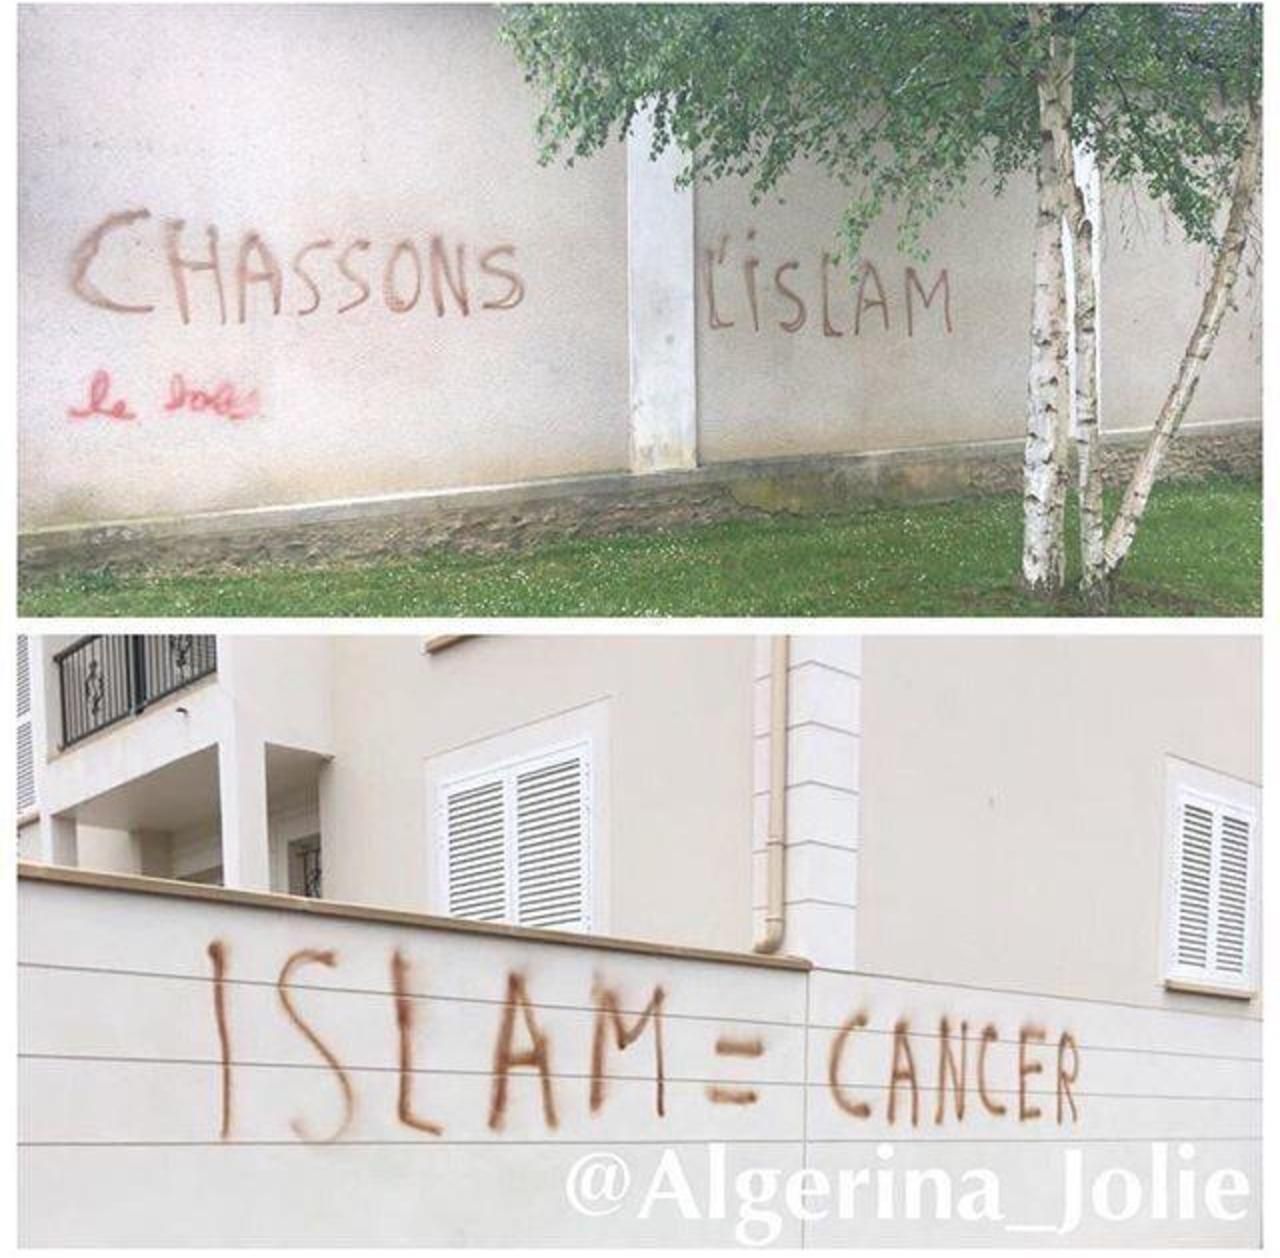 <b></b> Lieusaint, le 13 mai. Deux tags islamophobes ont été inscrits près de la mosquée sur le mur d’une maison.